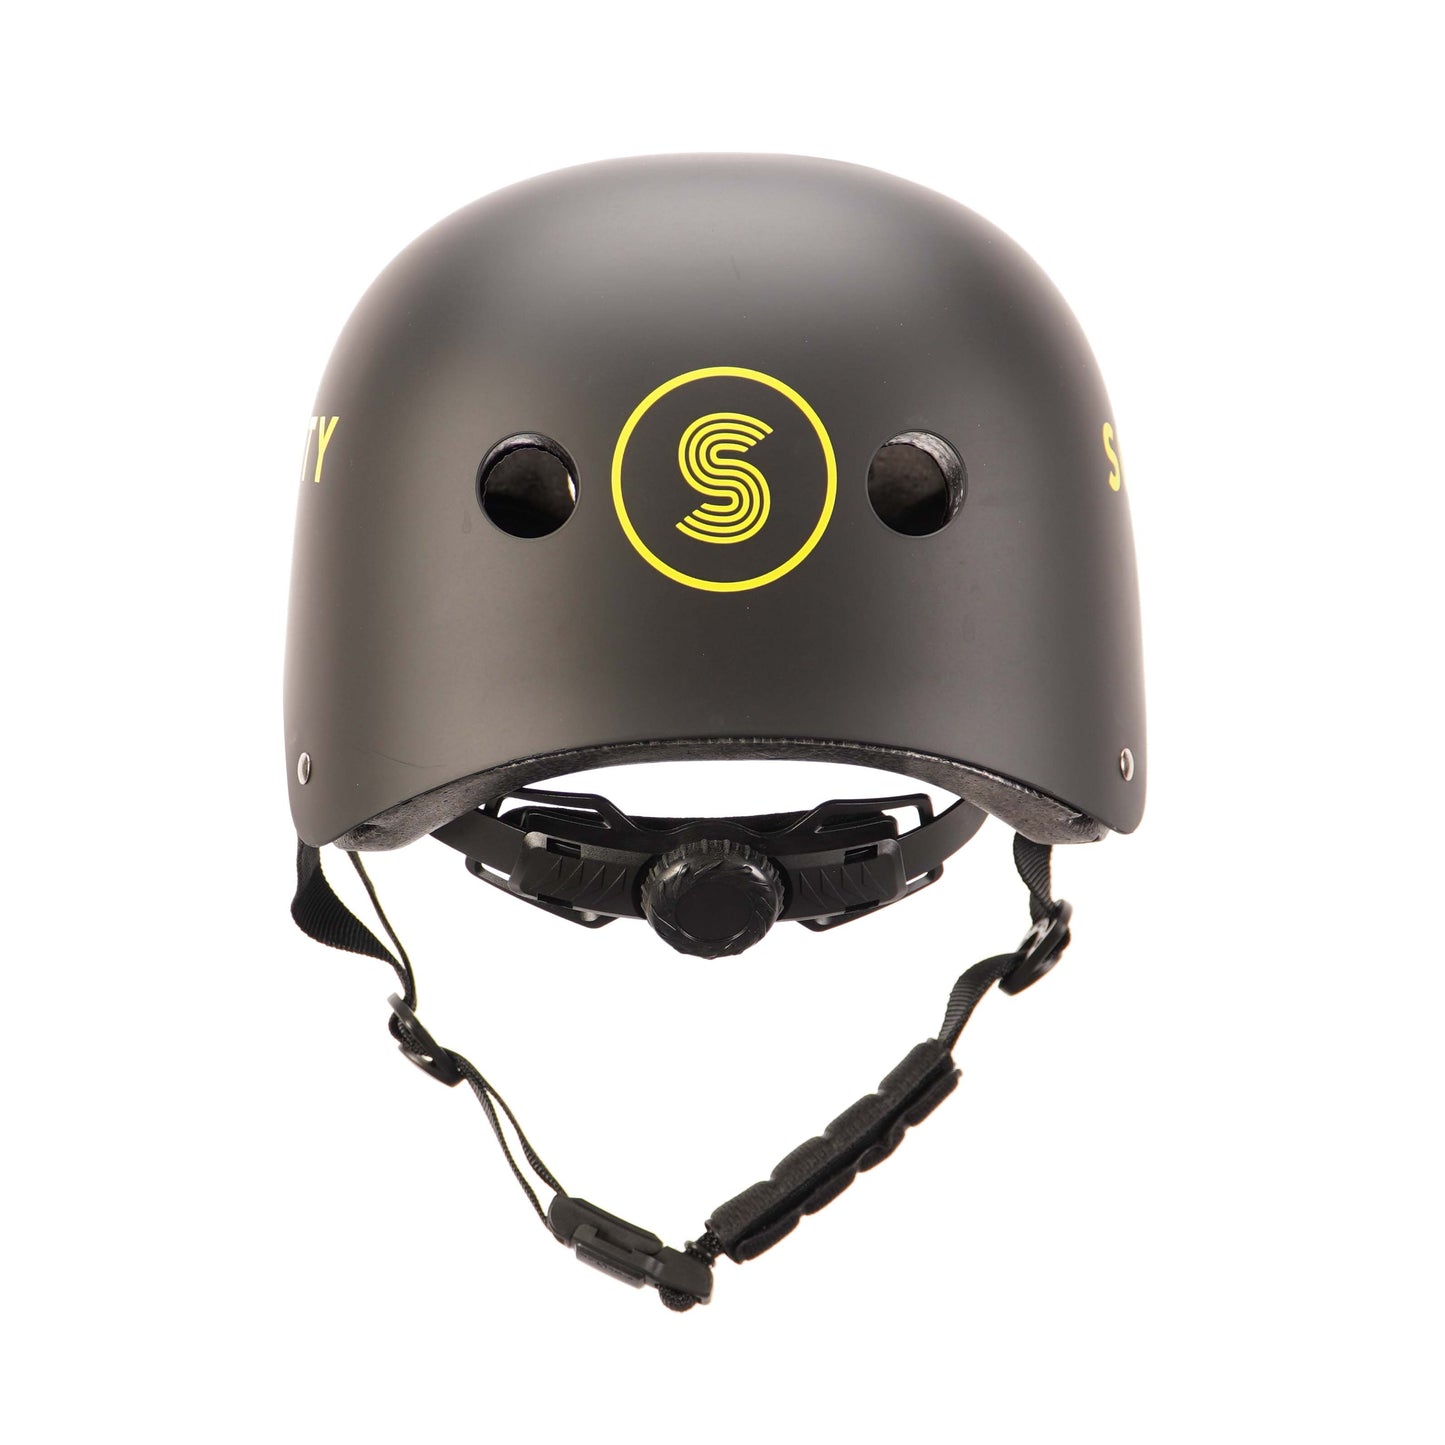 Scooty Black Helmet